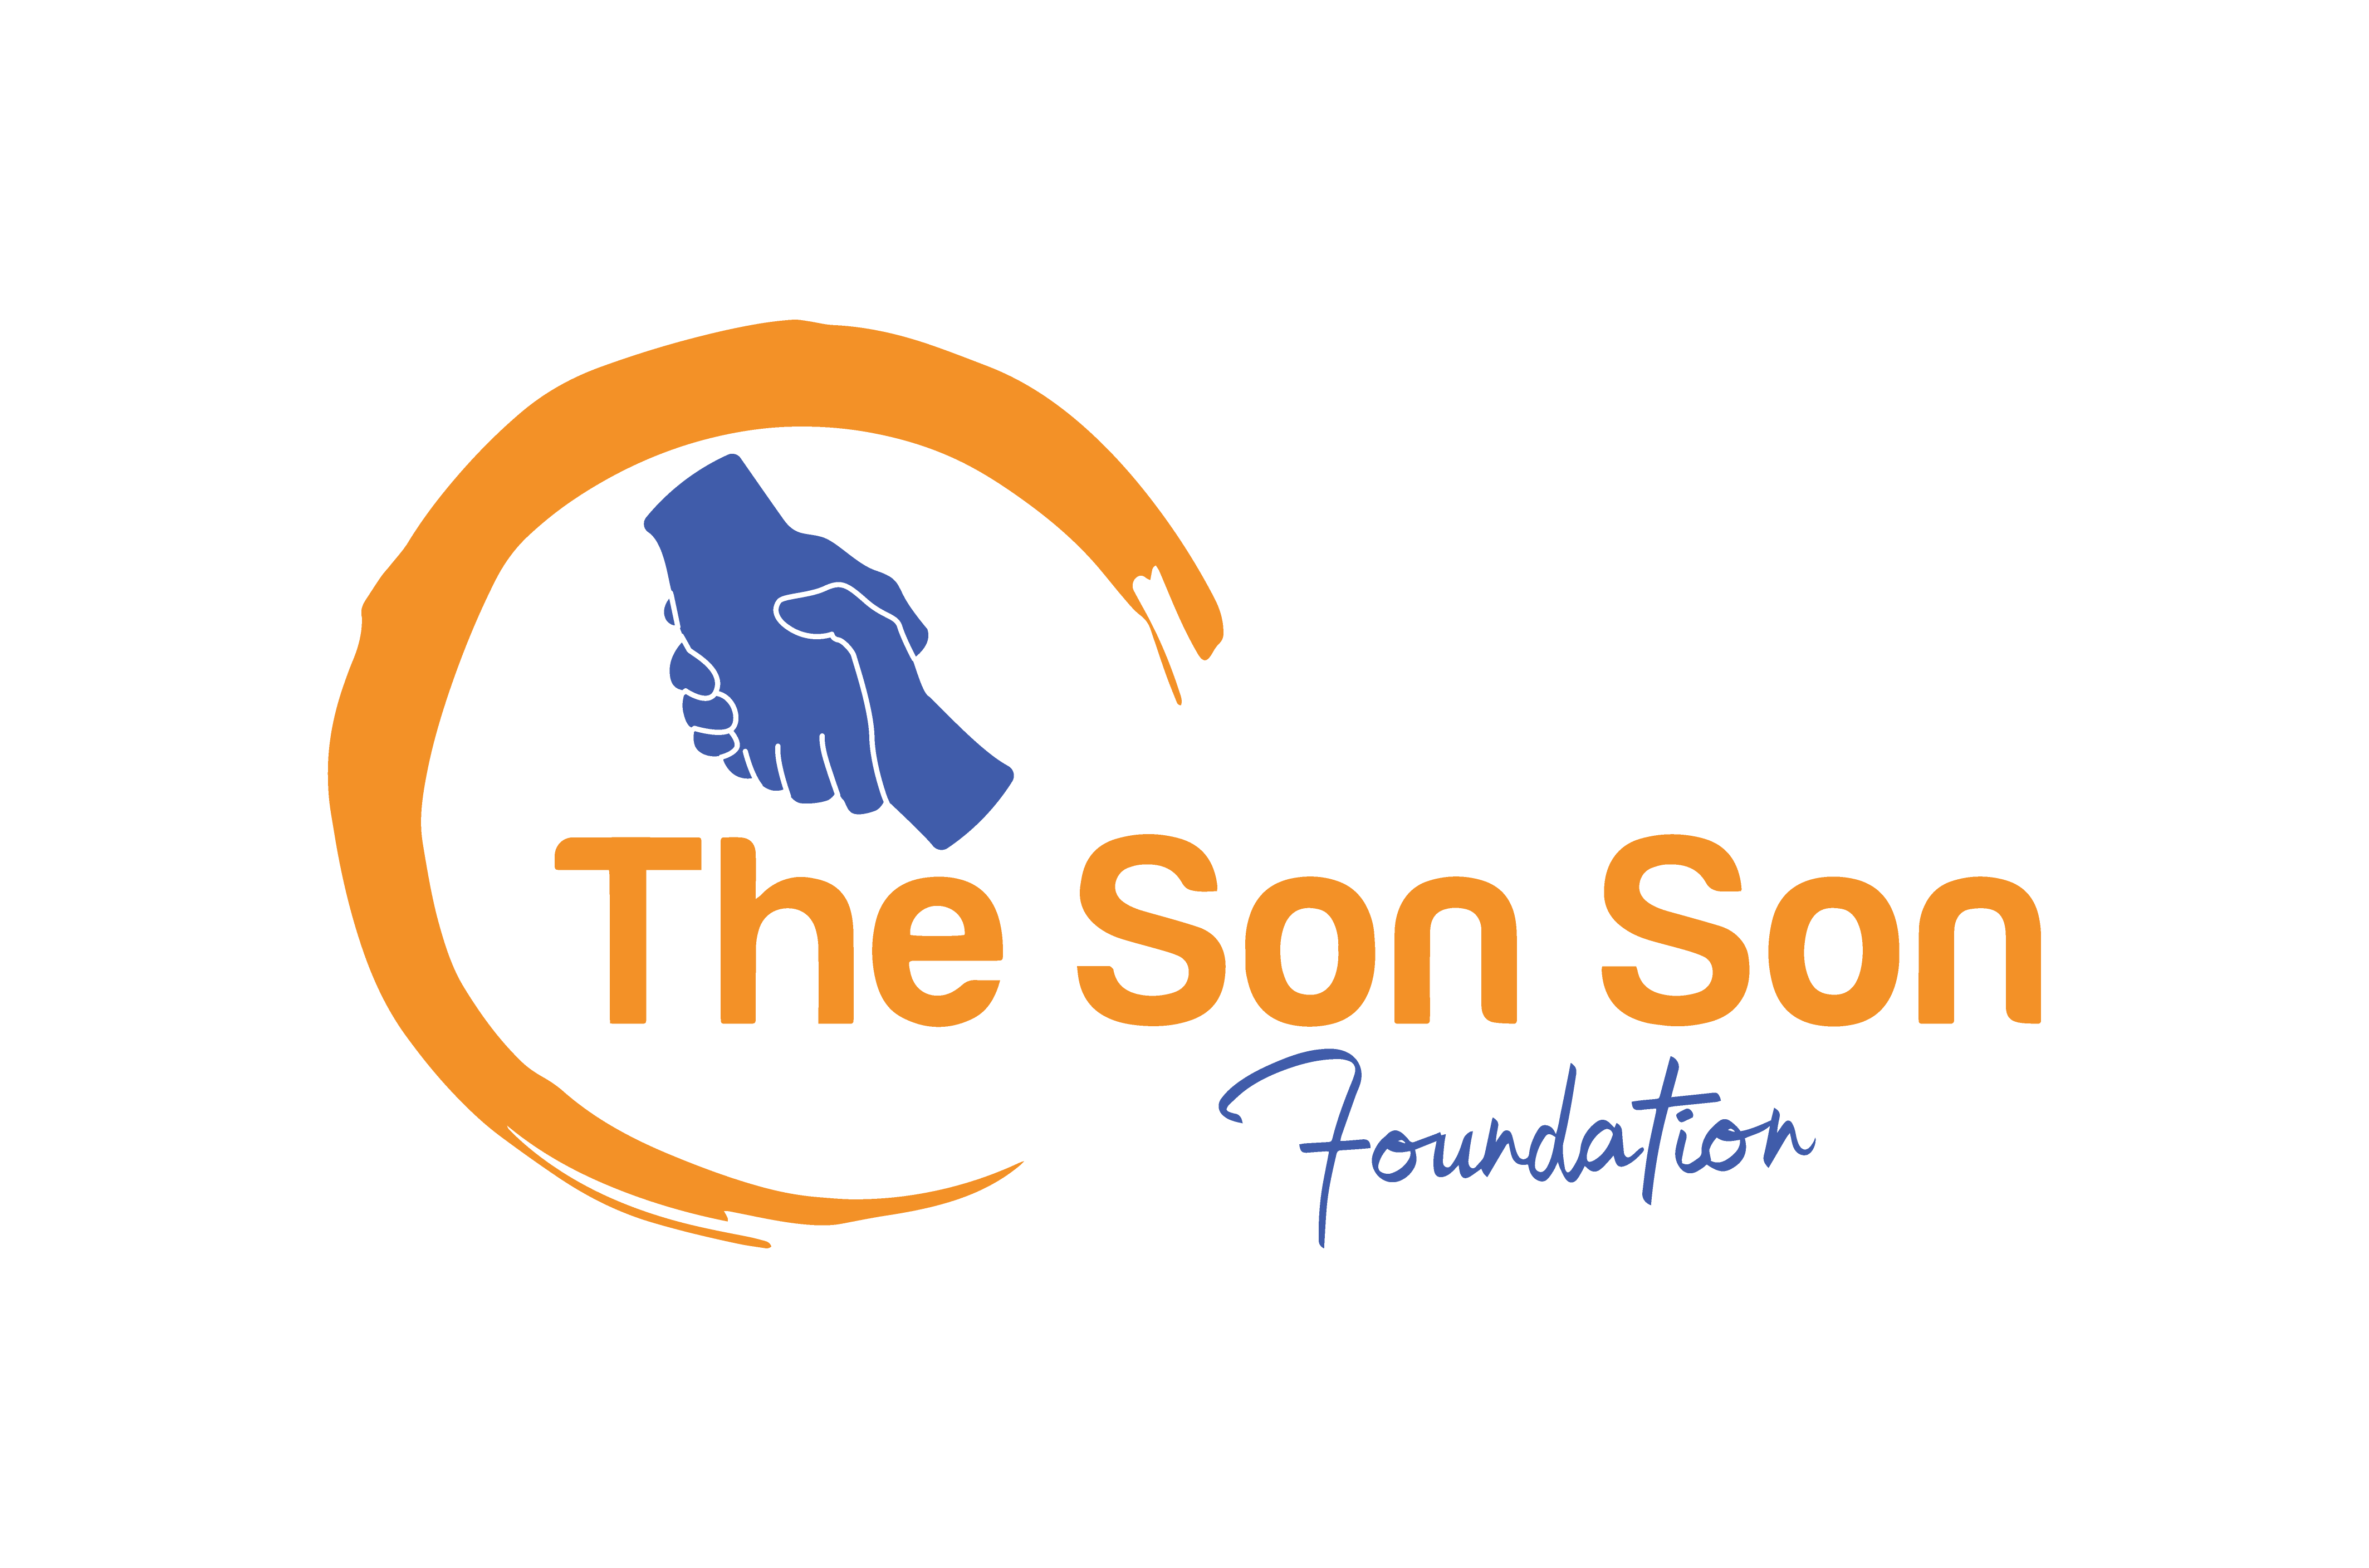 The Son Son Foundation logo